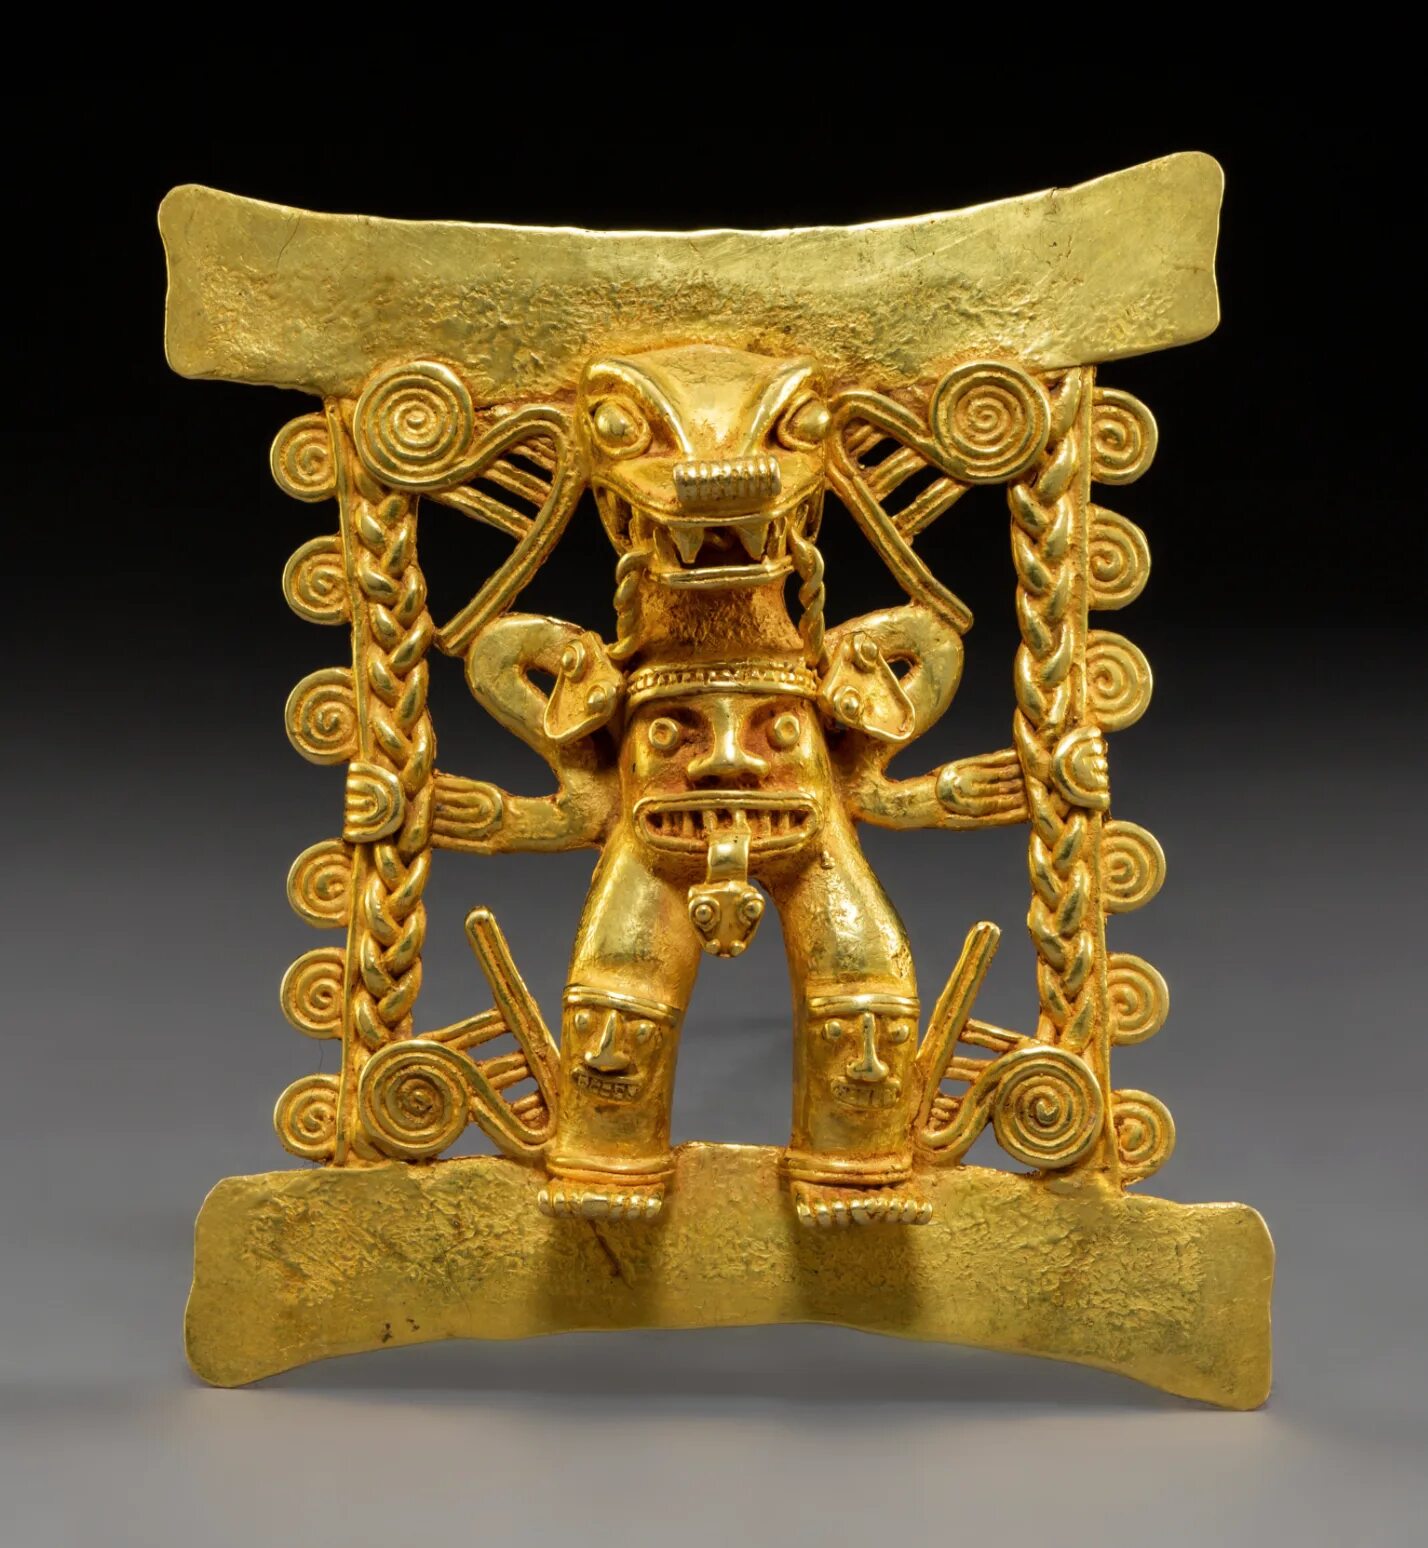 Aztec gold aztec gold org ru. Золото инков 16 век. Золото ацтеков. Золотые артефакты. Артефакты ацтеков.